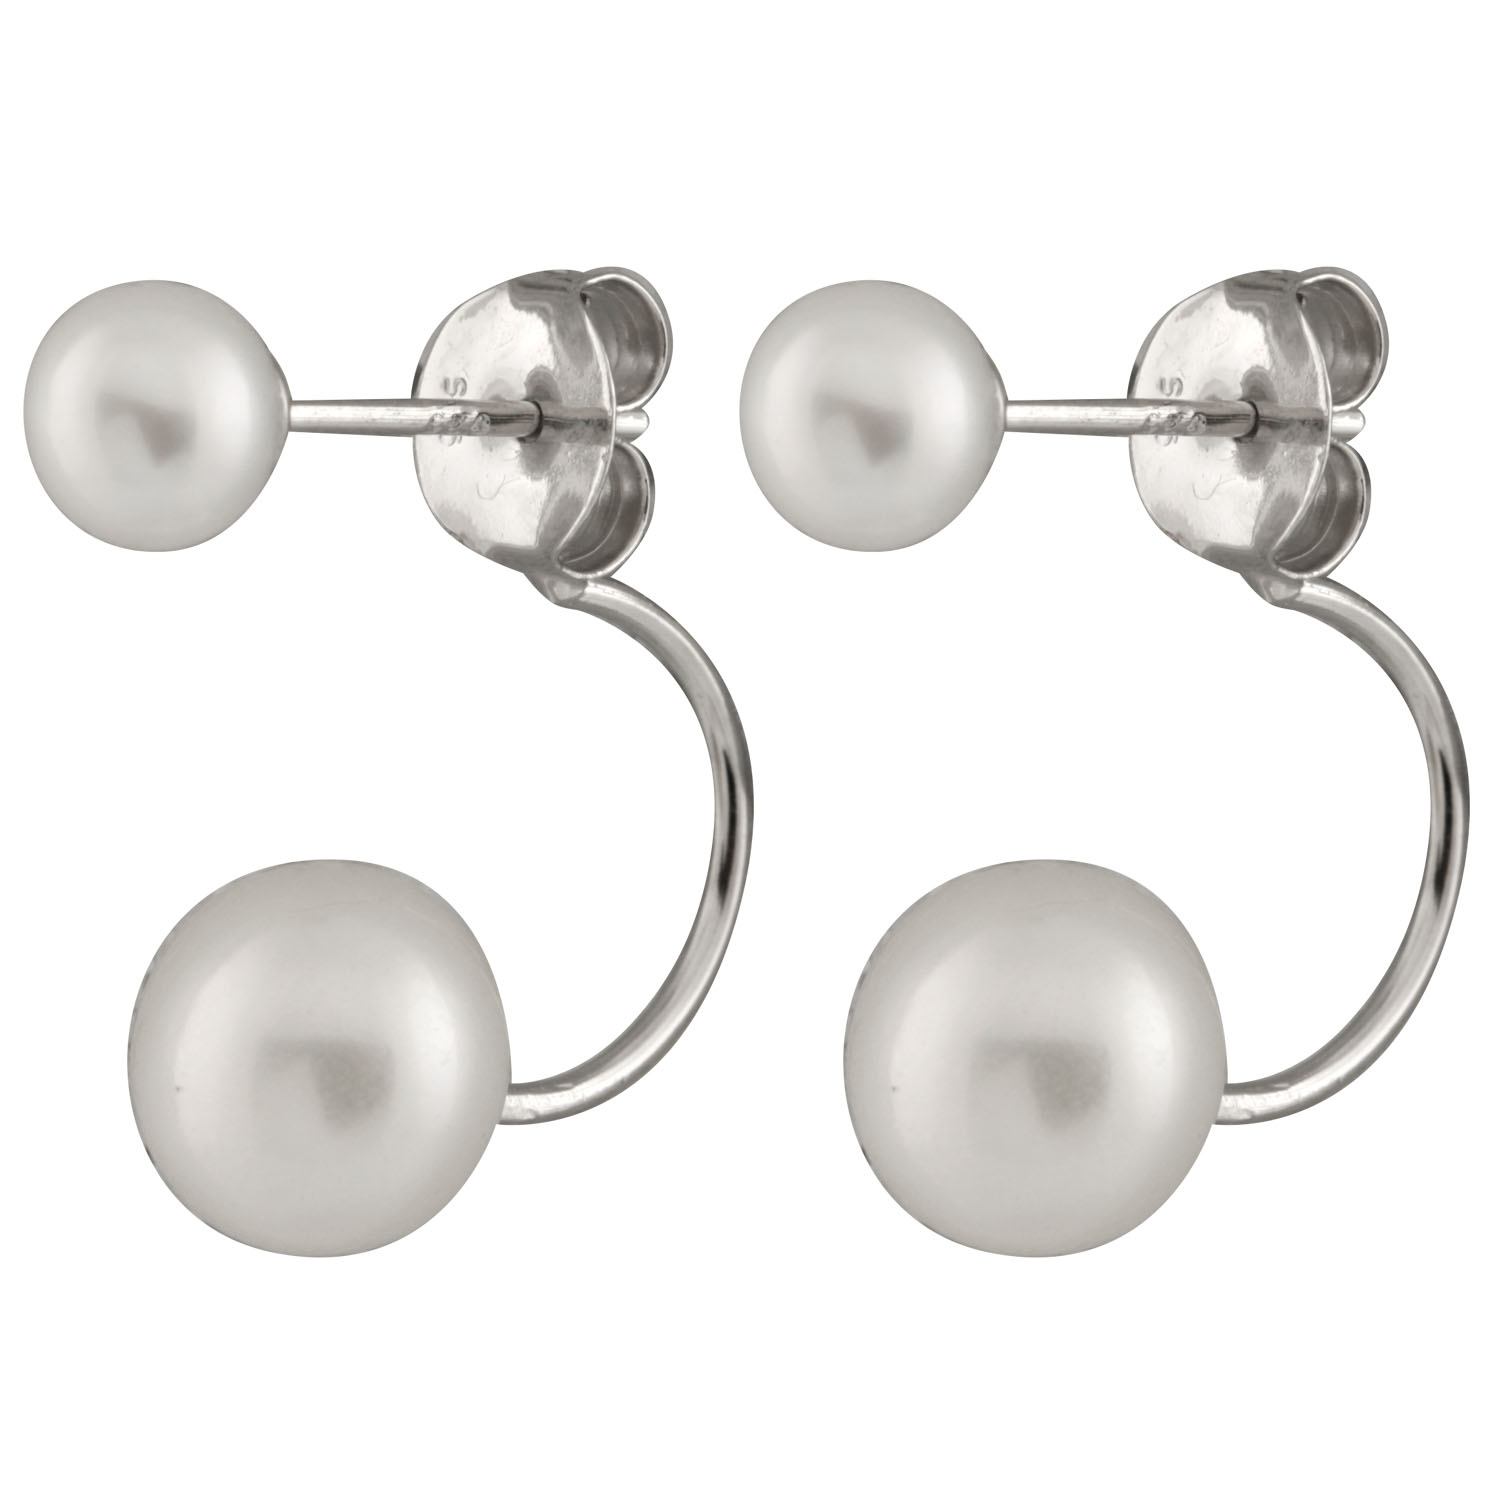 New sterling silver earrings